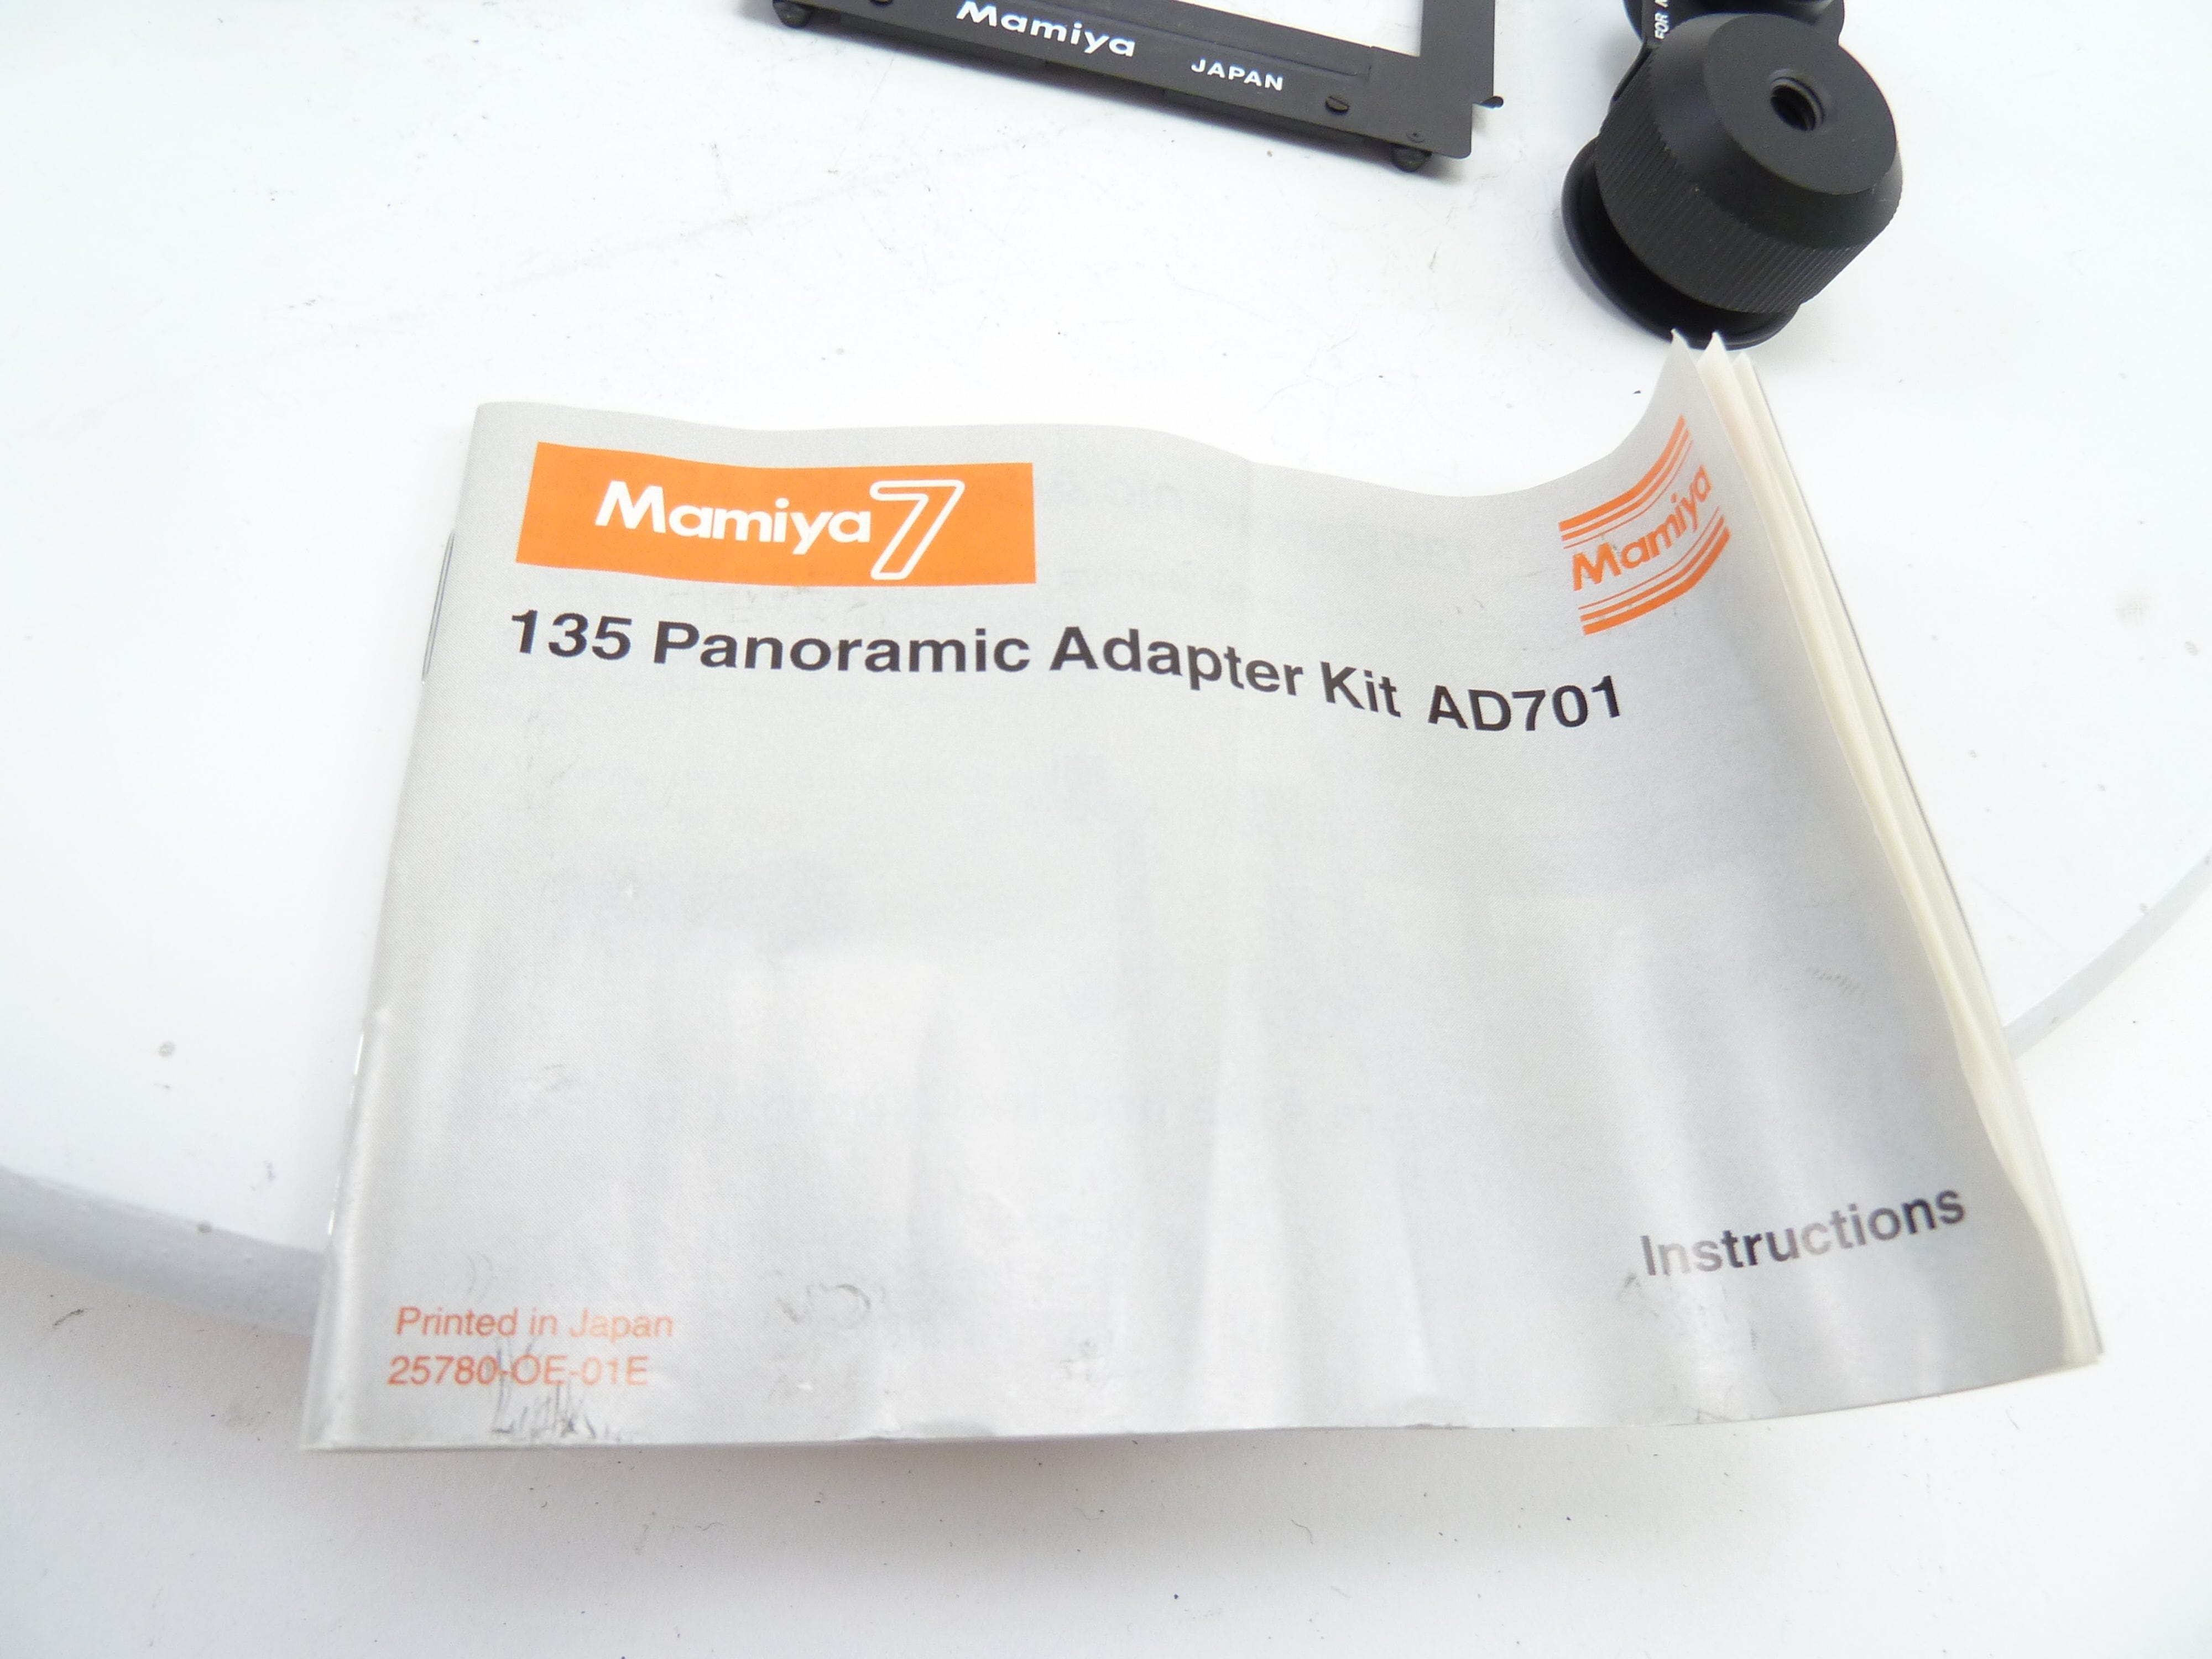 Mamiya 7 Panoramic Adapter Kit AD701